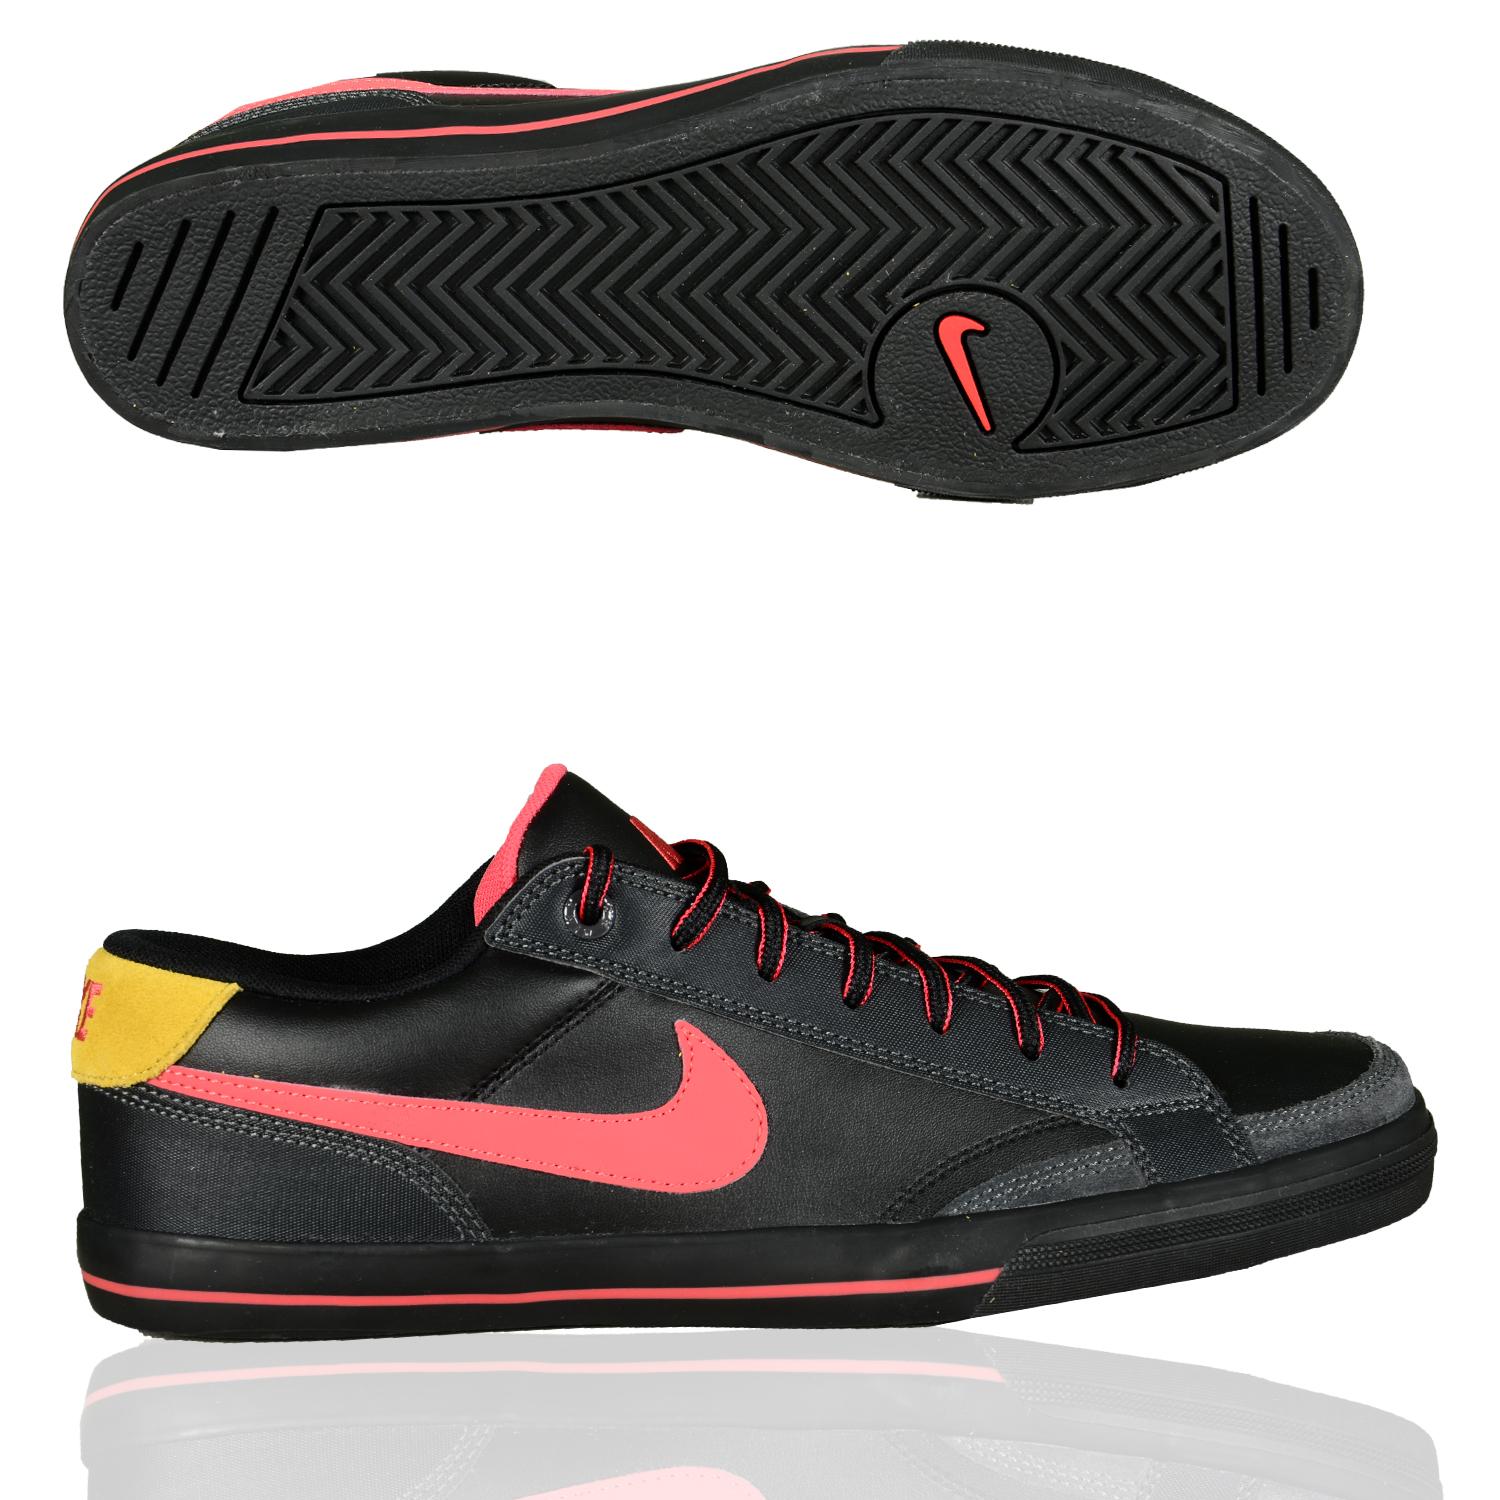 Foto Nike Shoe Nike Capri 2 Hombres La Zapatilla De Deporte Bajo Negro Rojo foto 592901